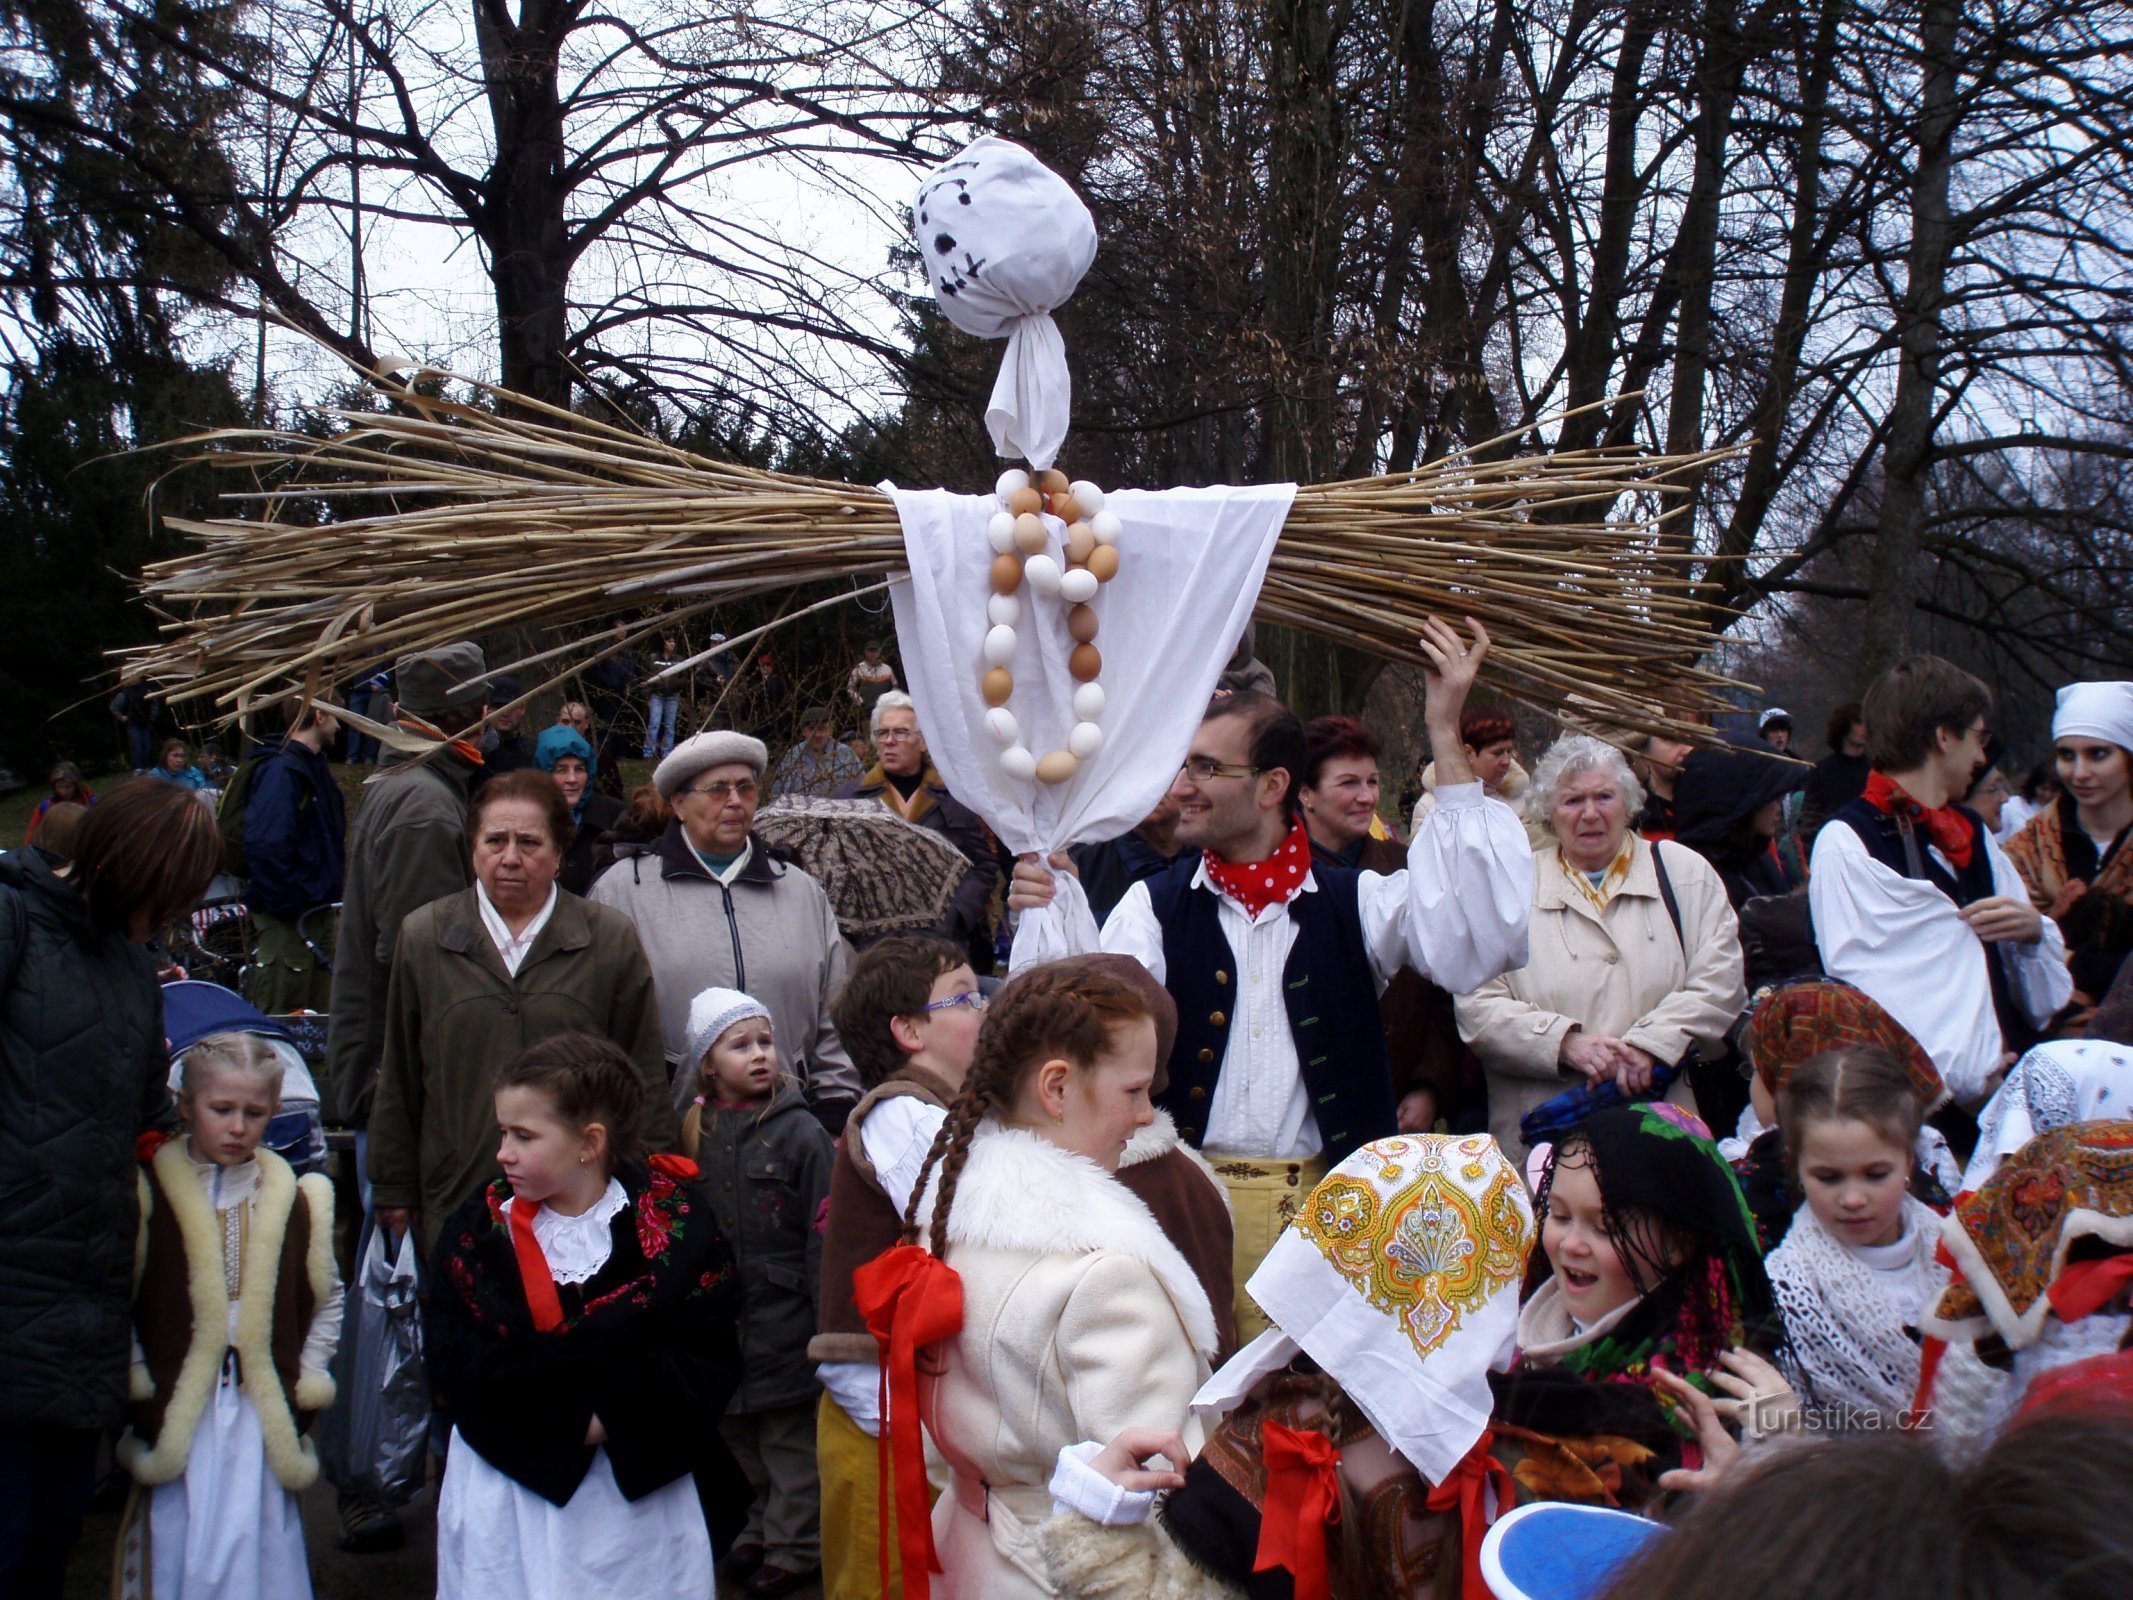 Smrtholkan suorittaminen Hradec Královésta (Hradec Králové, 29.3.2009)